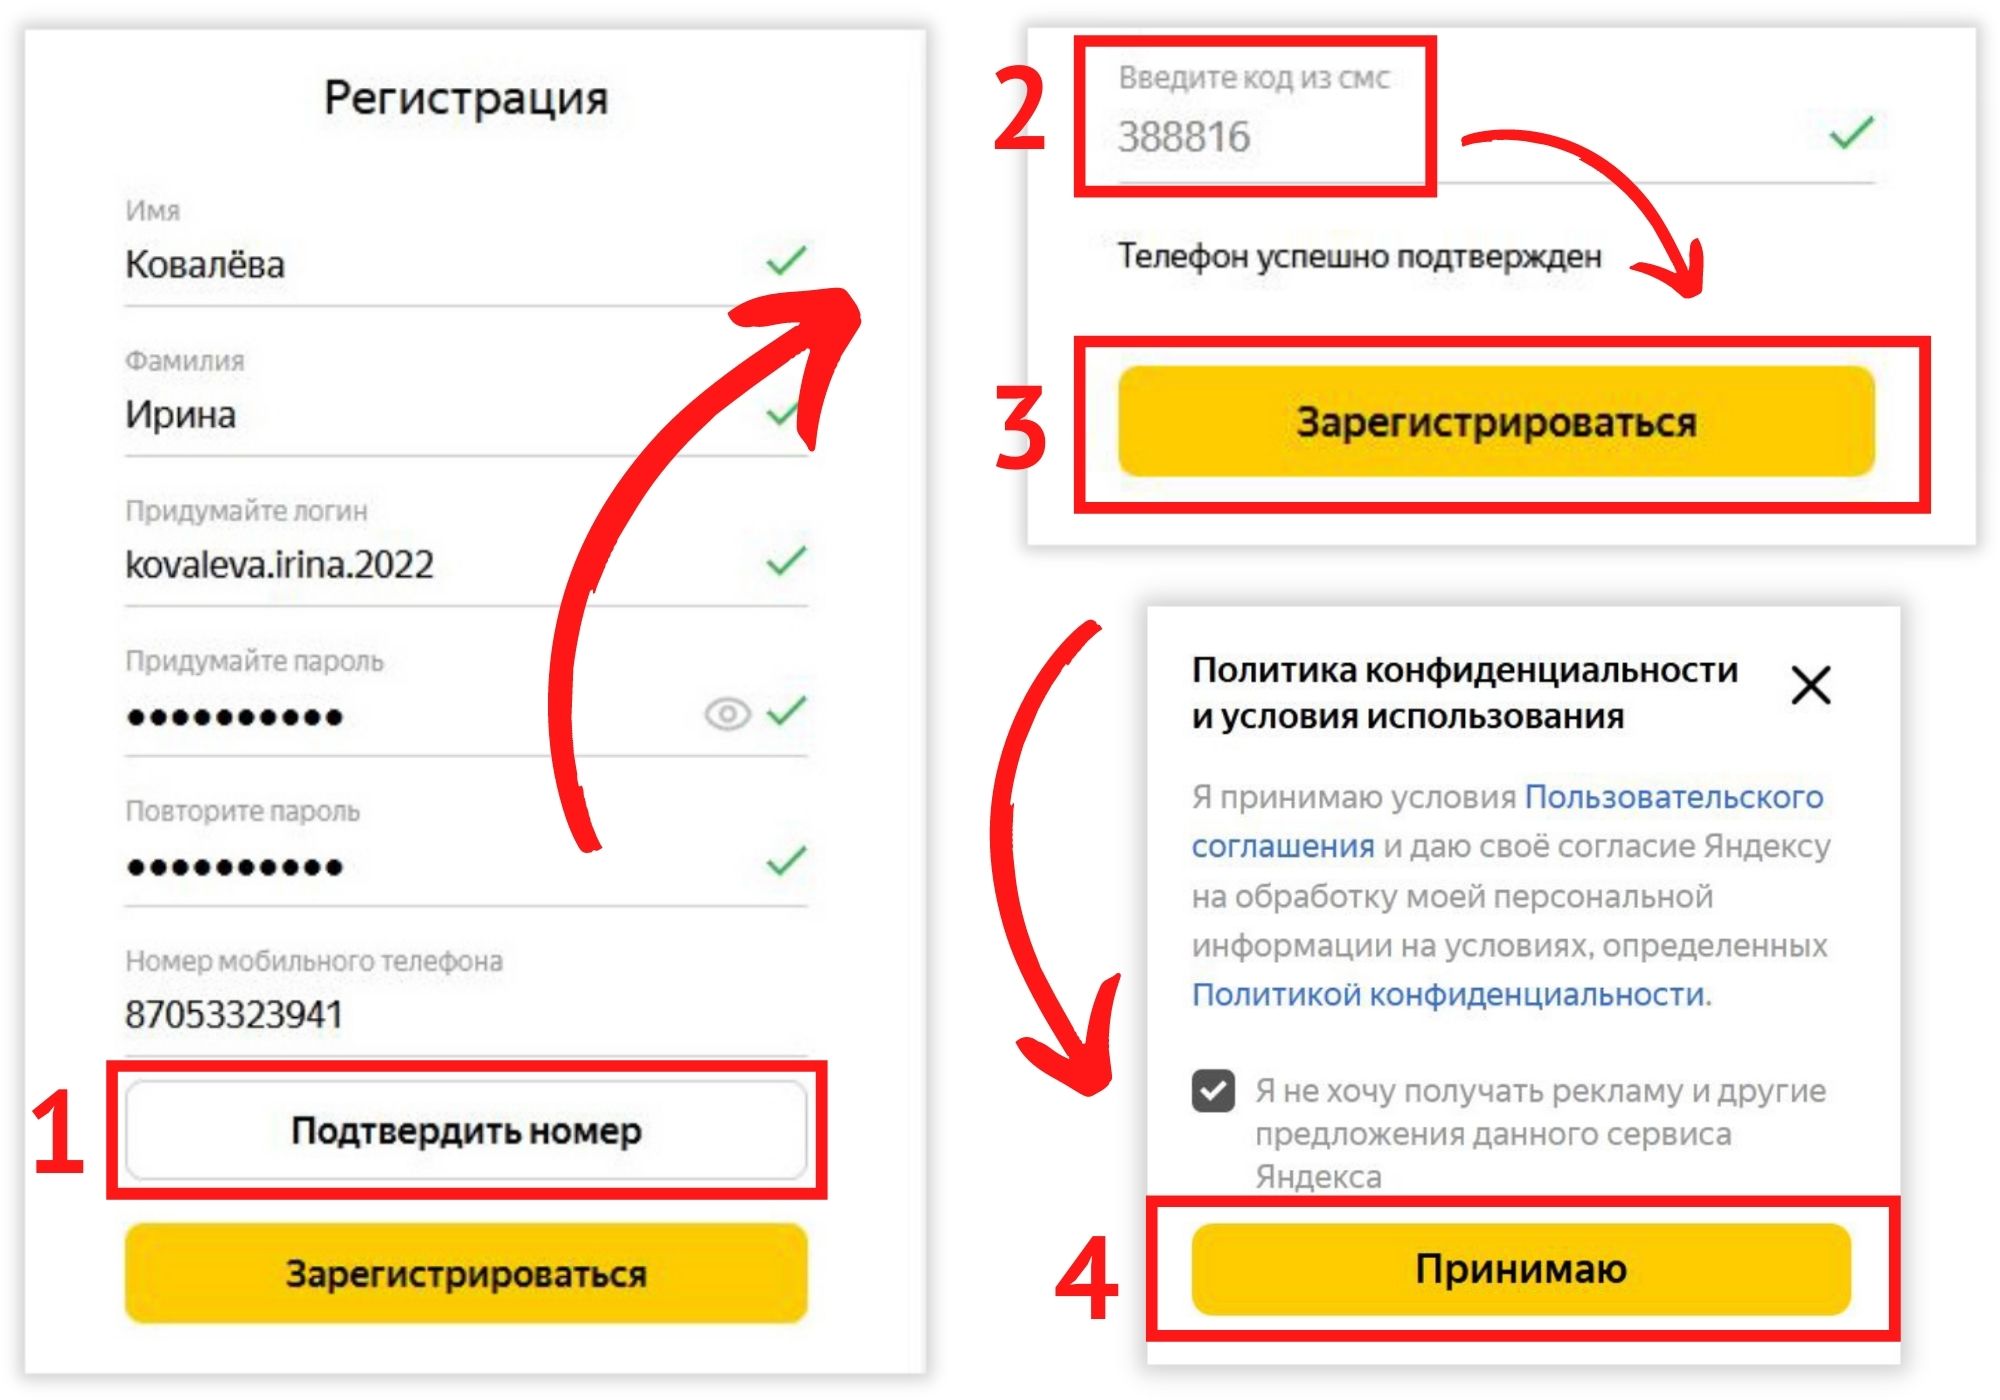 Как создать канал в Яндекс Дзене: пошаговая инструкция